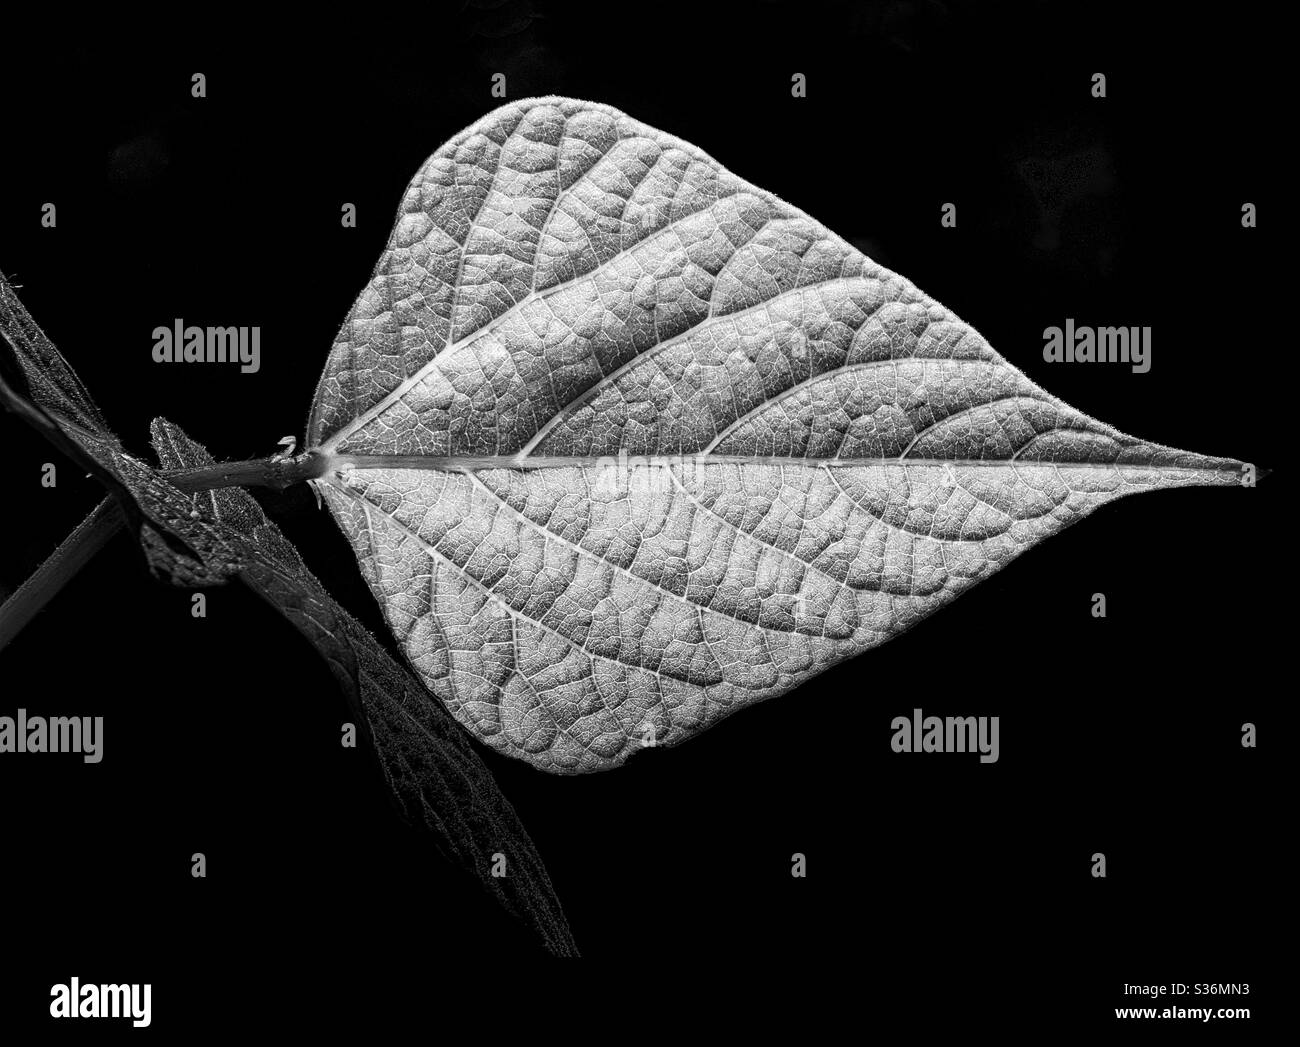 Nahaufnahme eines Blattes einer Läuferbohnenpflanze vor einem dunklen Hintergrund. Ein schöner silberner Speerkopf mit jedem Detail deutlich sichtbar. Schwarzweiß-Fotografie. Stockfoto